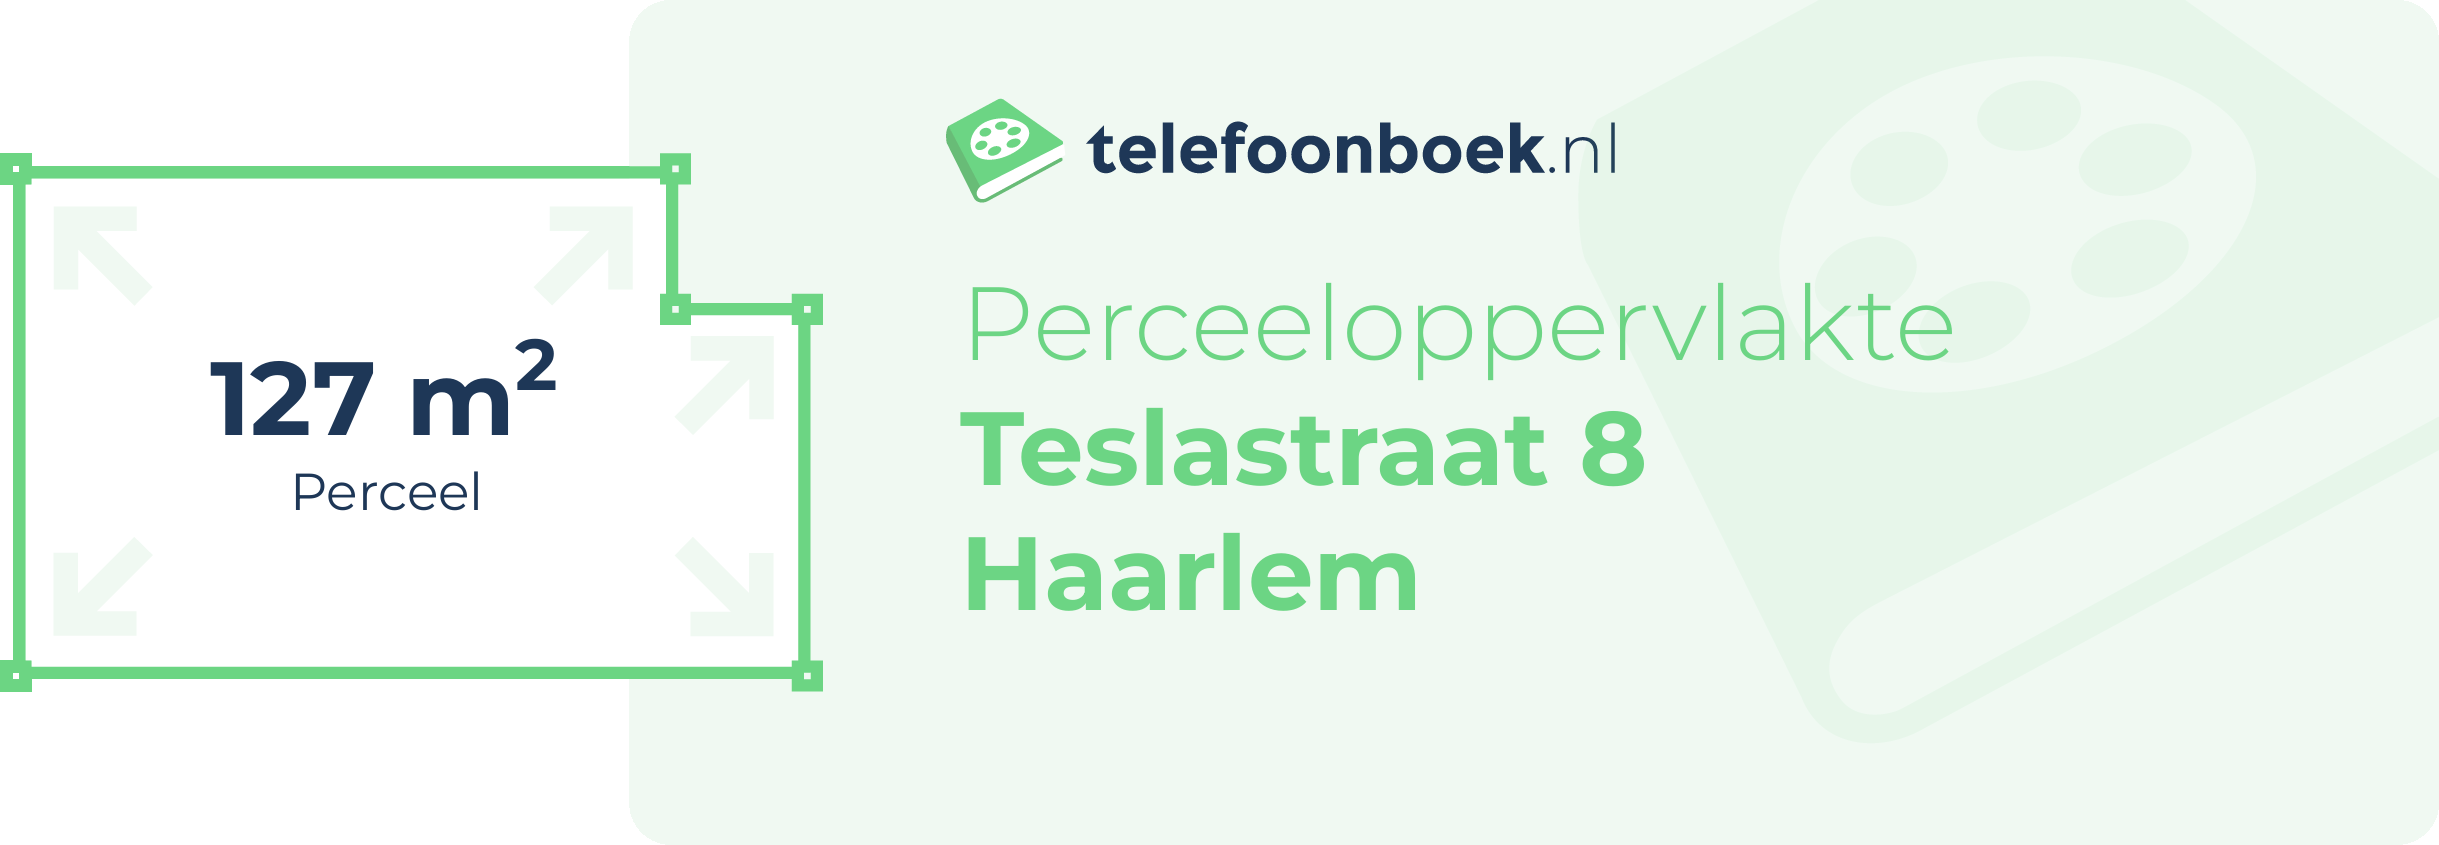 Perceeloppervlakte Teslastraat 8 Haarlem